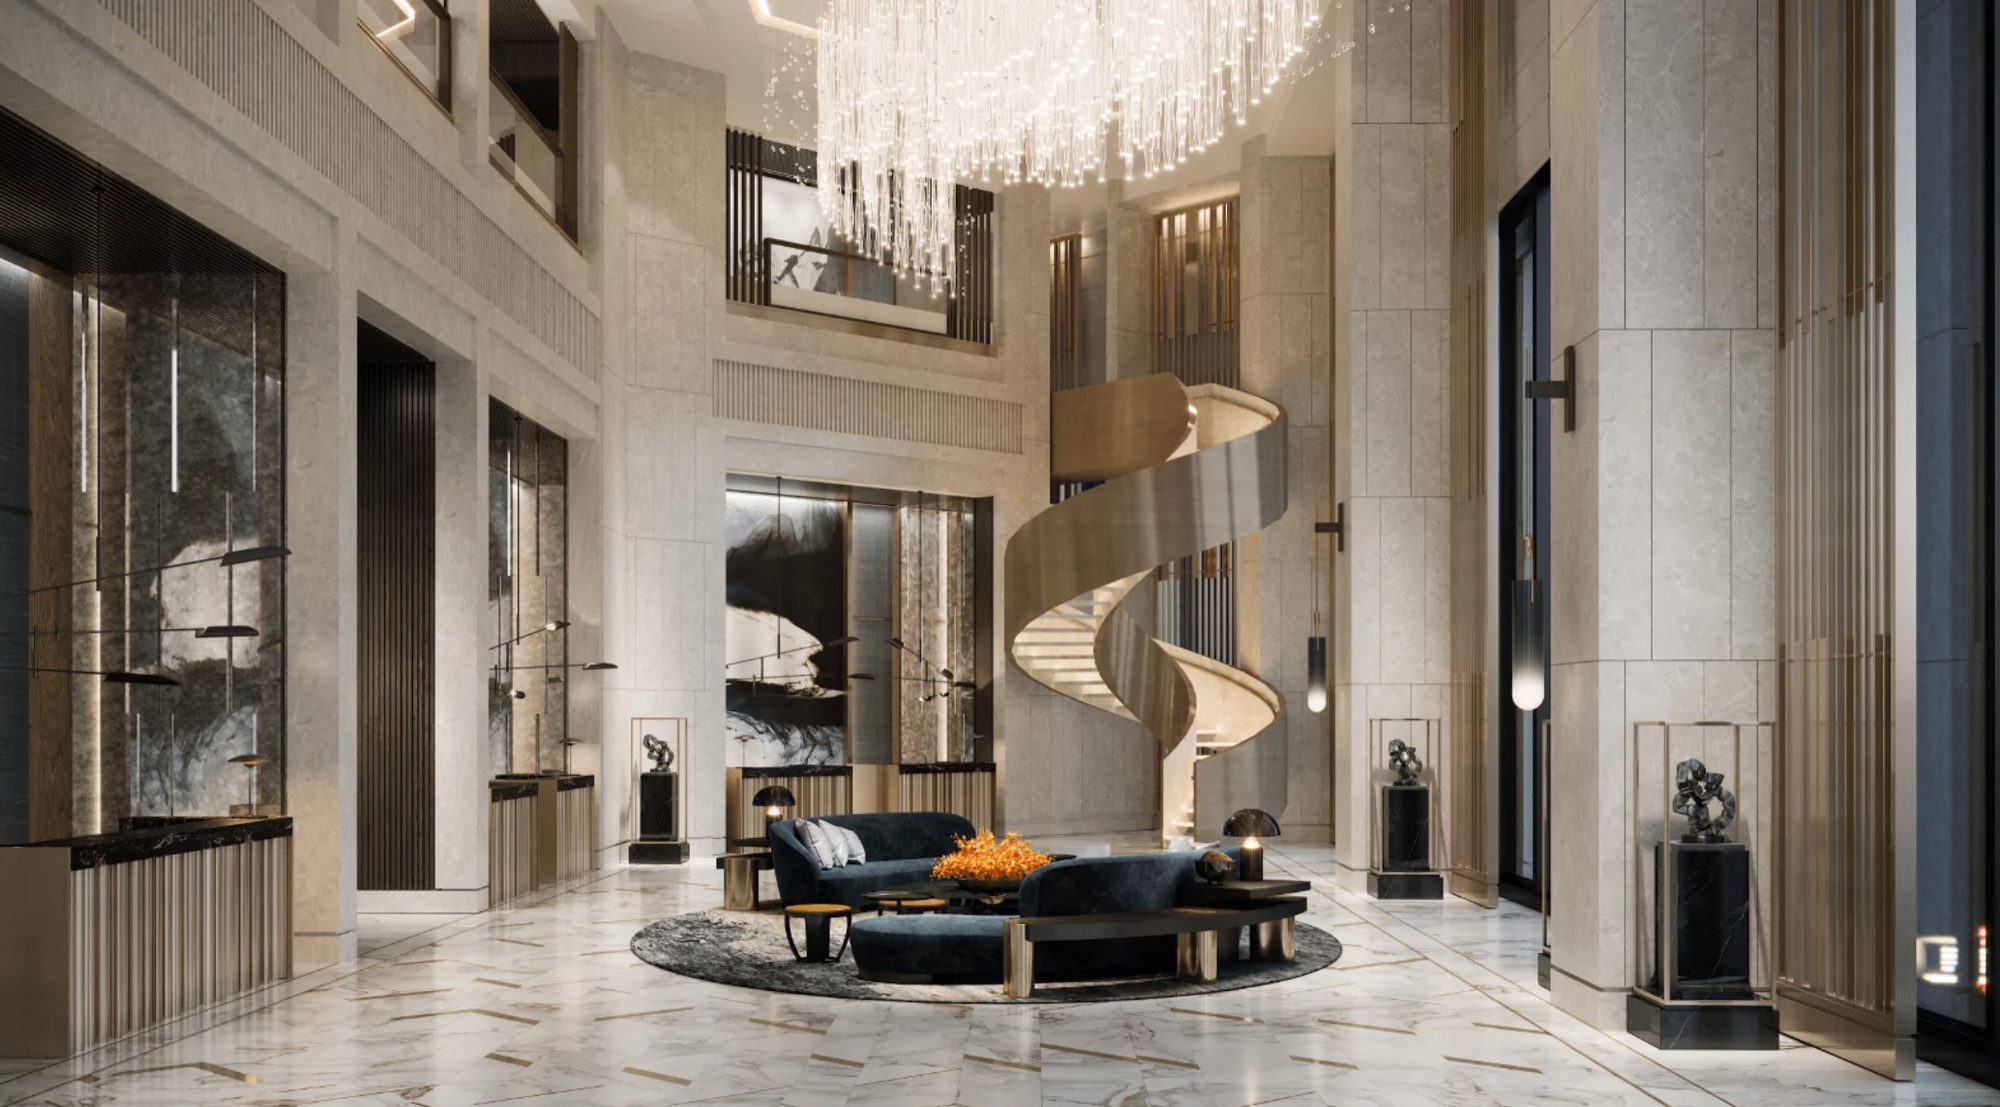 Chuyện chưa kể về Kempinski Hotel – Thương hiệu khách sạn xa xỉ, là lựa chọn kín tiếng của hoàng gia và giới siêu giàu trên thế giới- Ảnh 3.